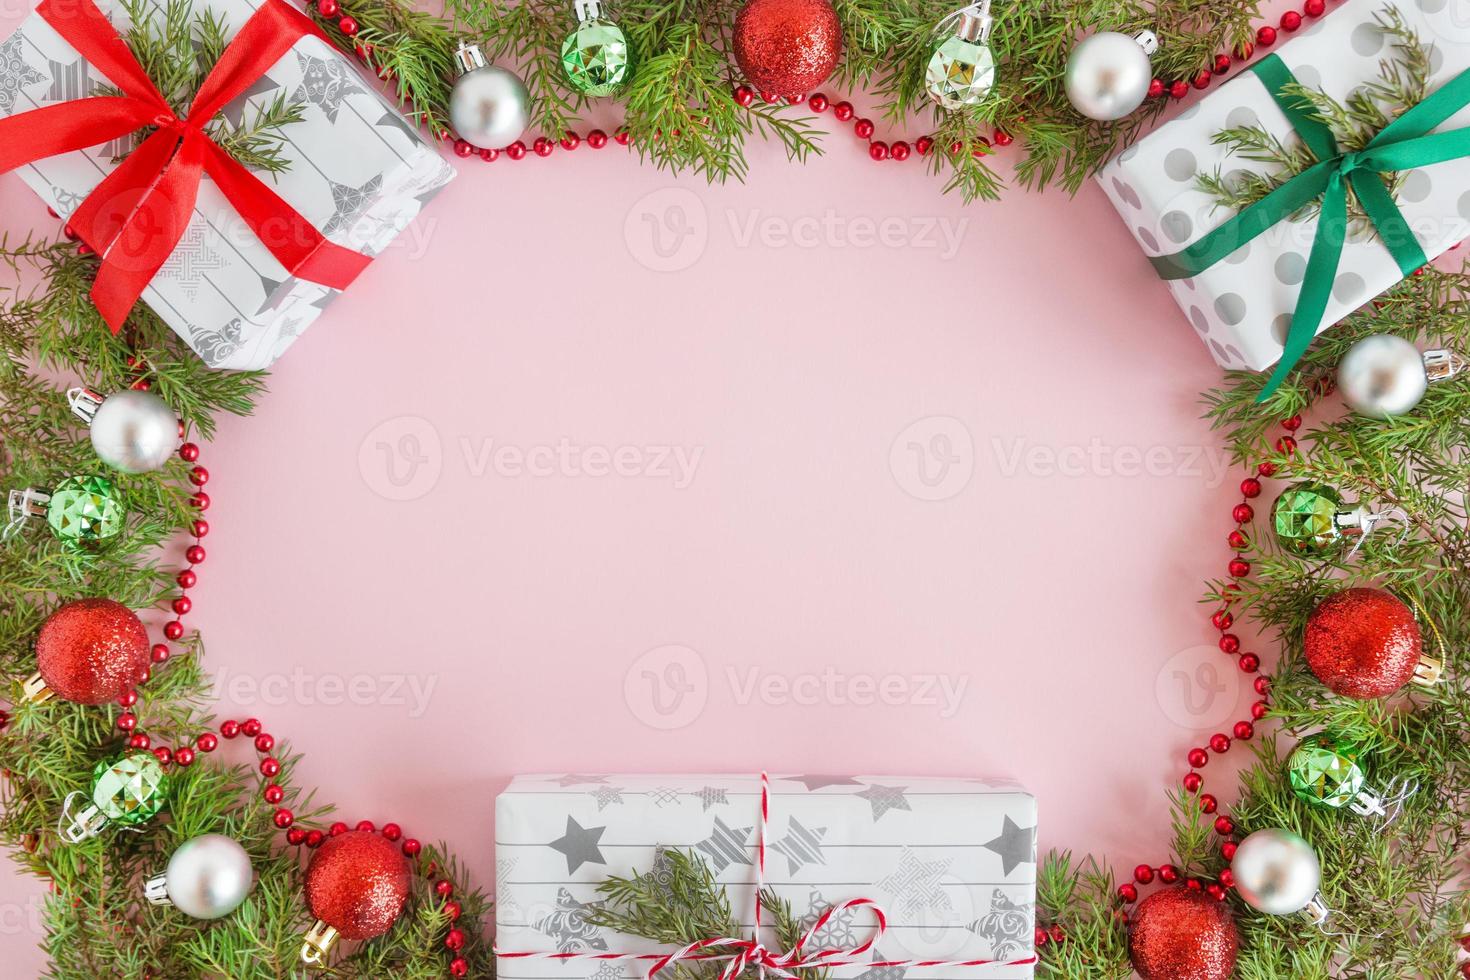 superiore Visualizza su un' telaio a partire dal rosso, verde e argento Natale decorazioni, regalo scatole e abete rami su un' rosa sfondo con copia spazio. foto